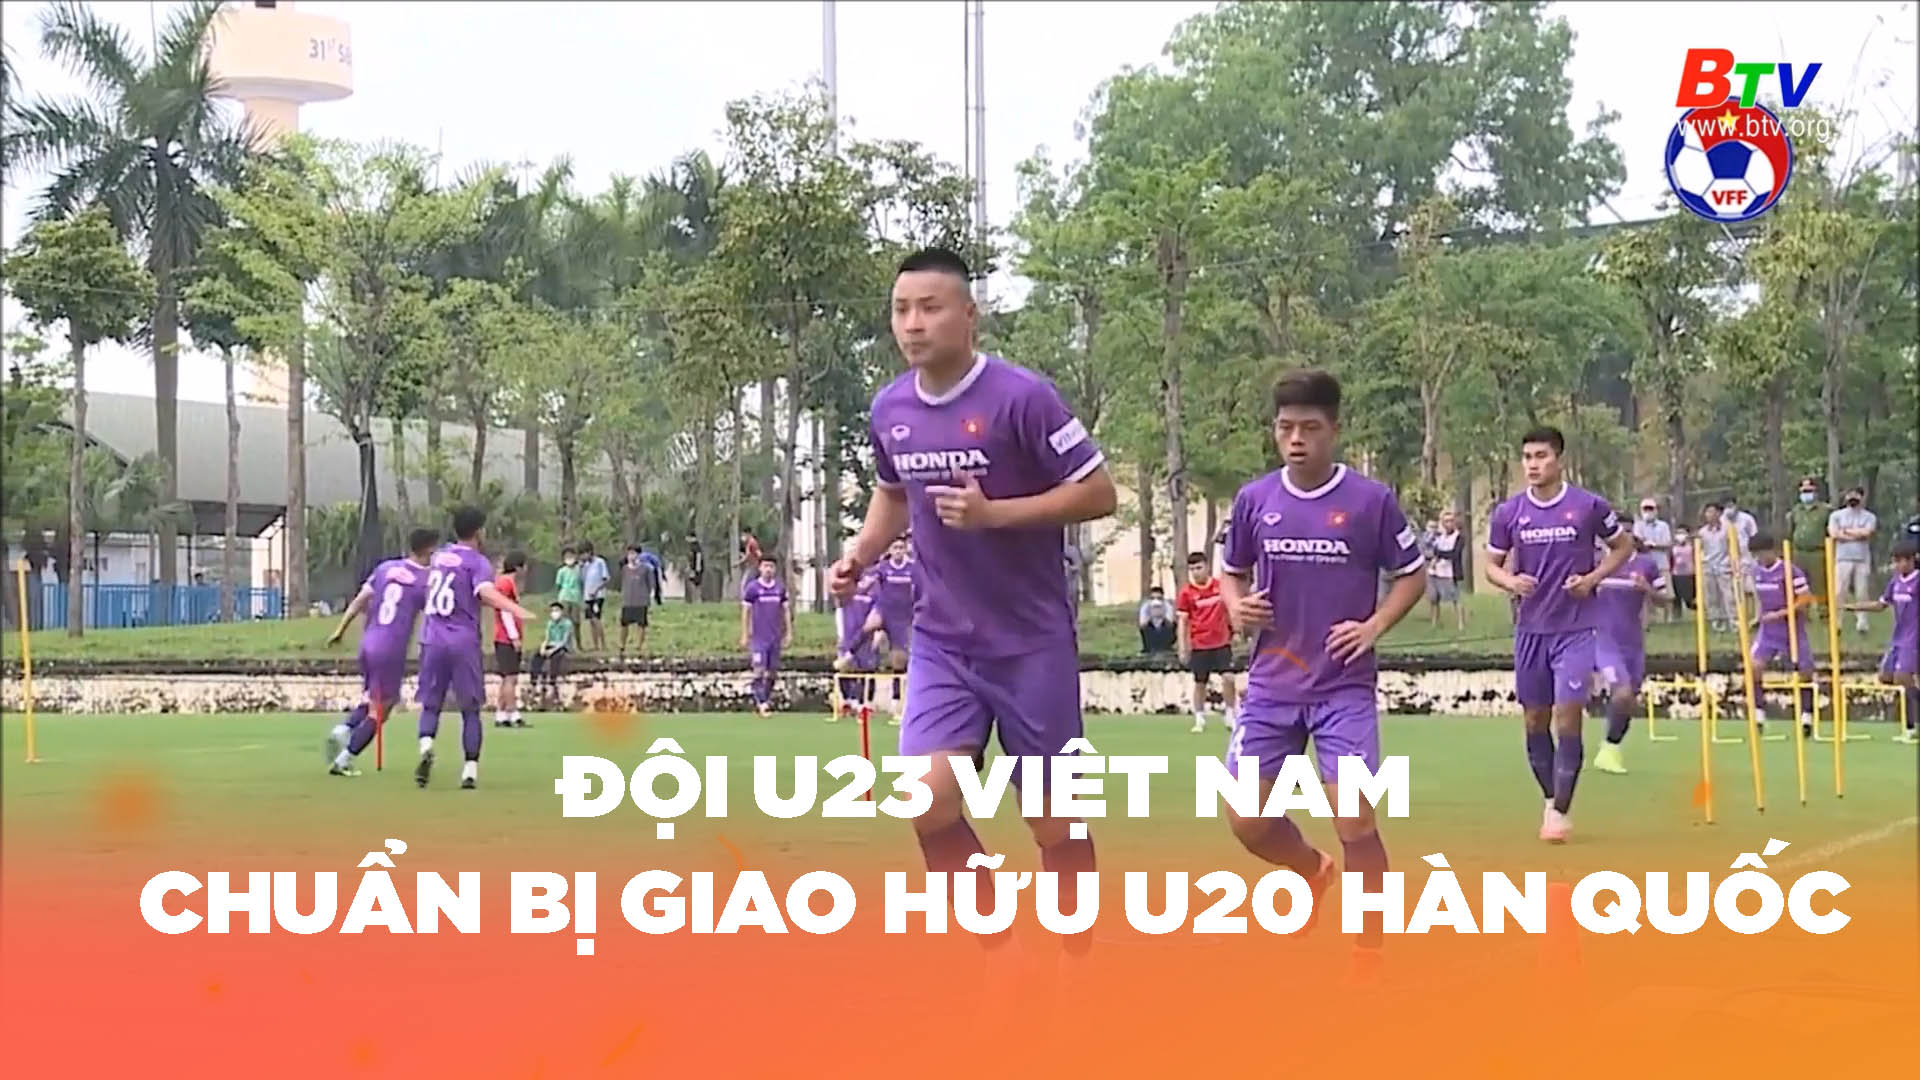 Đội U23 Việt Nam tích cực chuẩn bị cho giao hữu với U20 Hàn Quốc